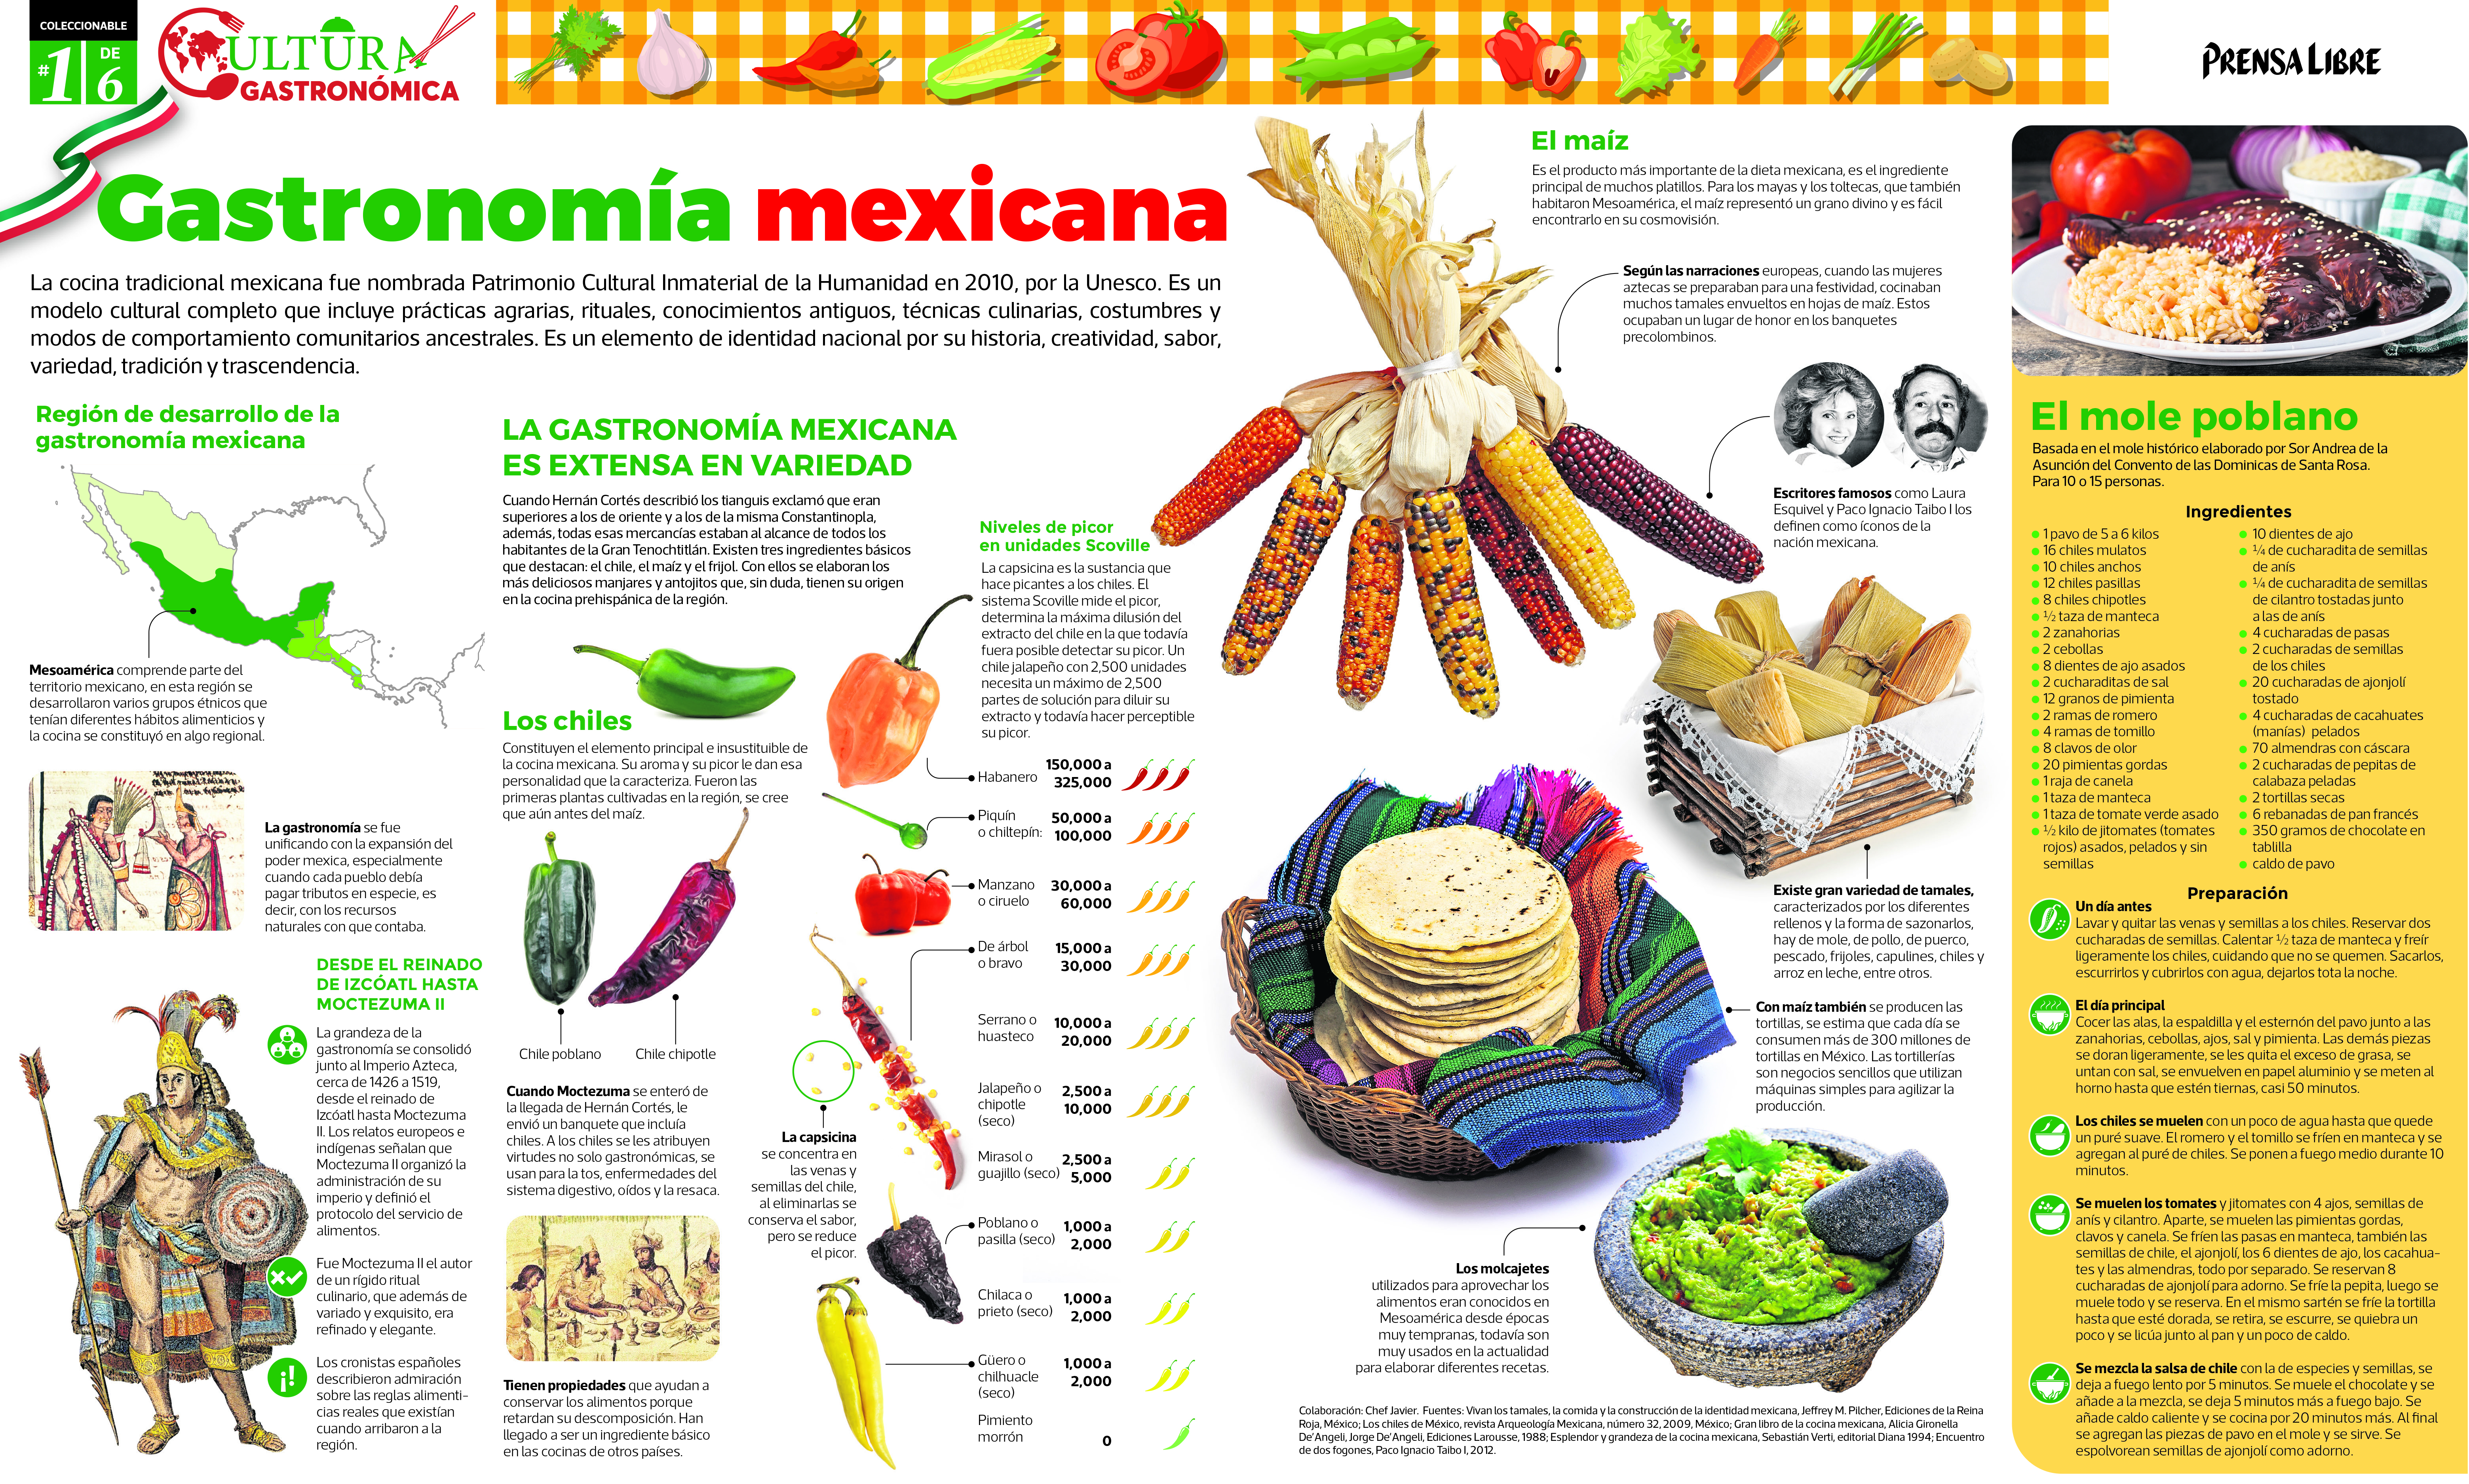 Prensa Libre publicara dos nuevas colecciones Mente y cuerpo y Cultura gastronómica